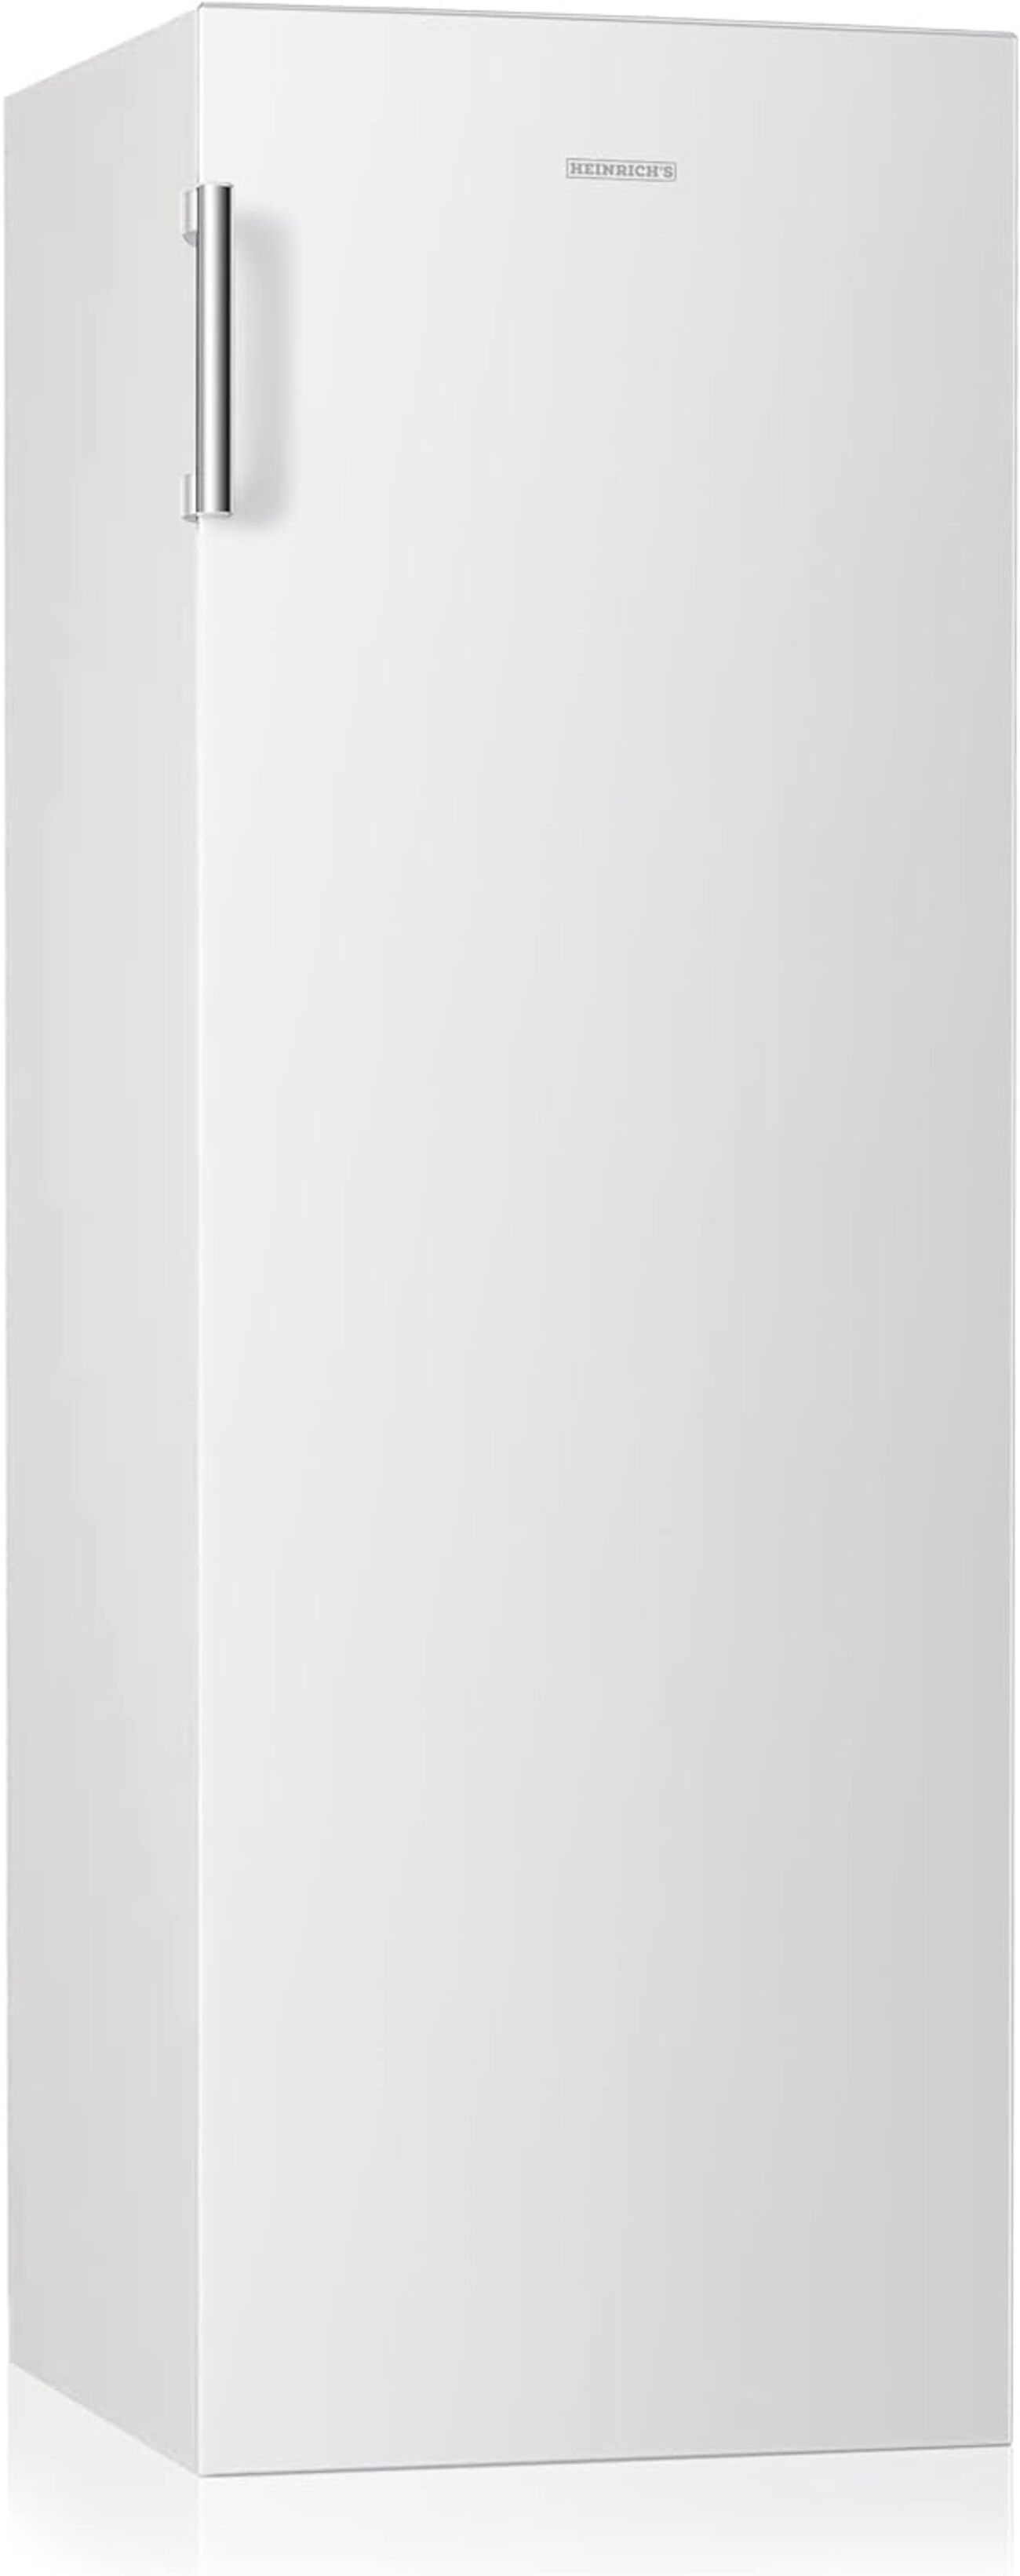 HEINRICHS HEINRICHS freistehender Kühlschrank 242L, Vollraumkühlschrank, weiss) LED-Beleuchtung, hoch, cm Kühlschrank 143,4 (E